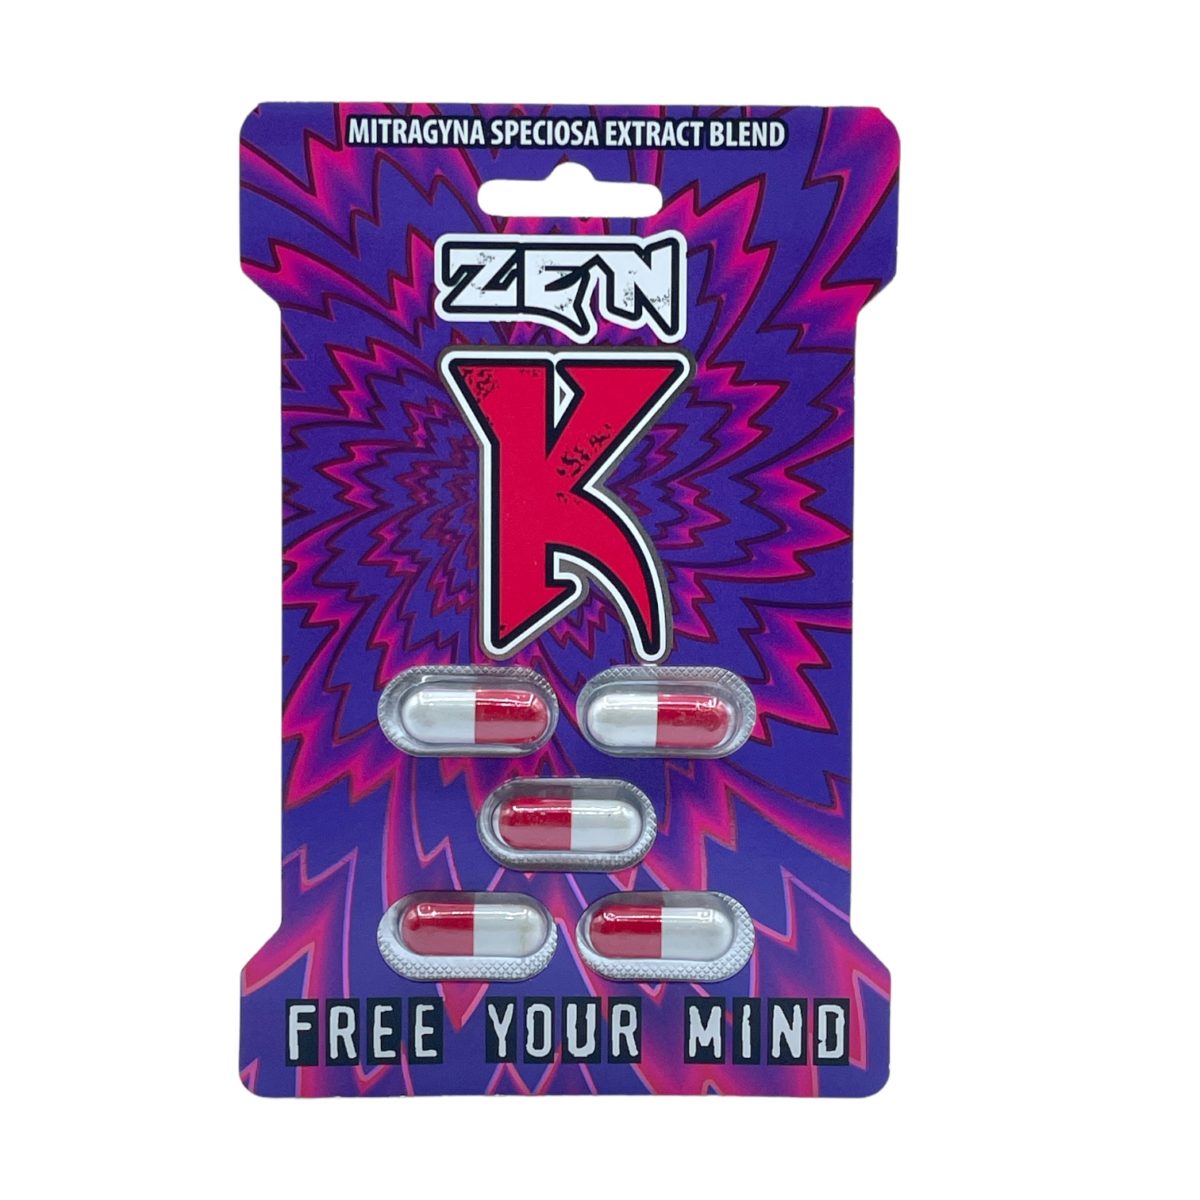 Zen K Kratom Extract Blend Capsules